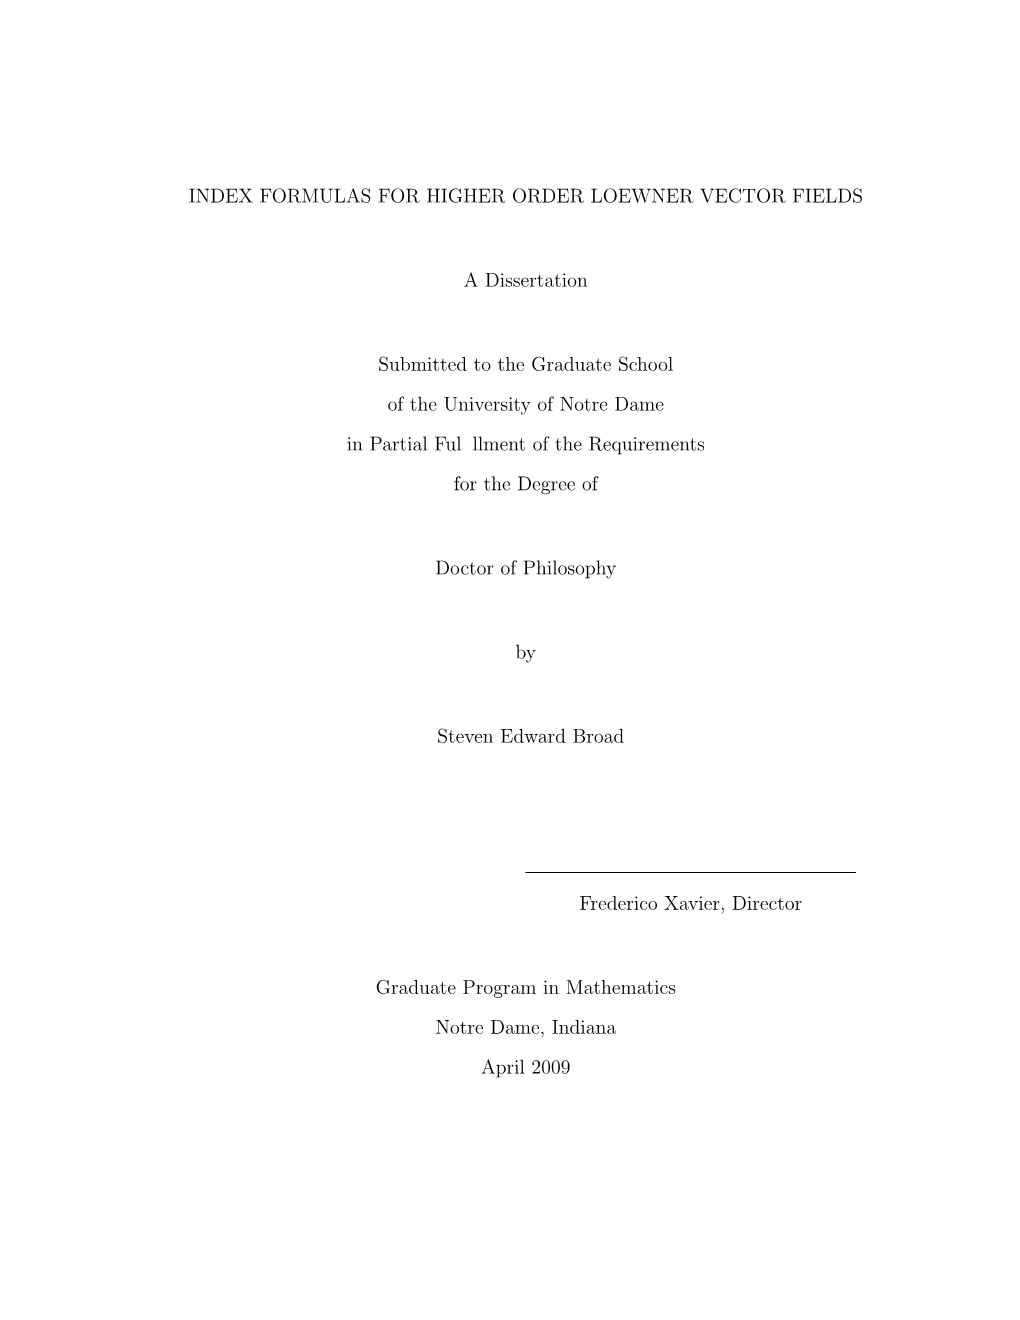 Formulas for Higher Order Loewner Vector Fields A